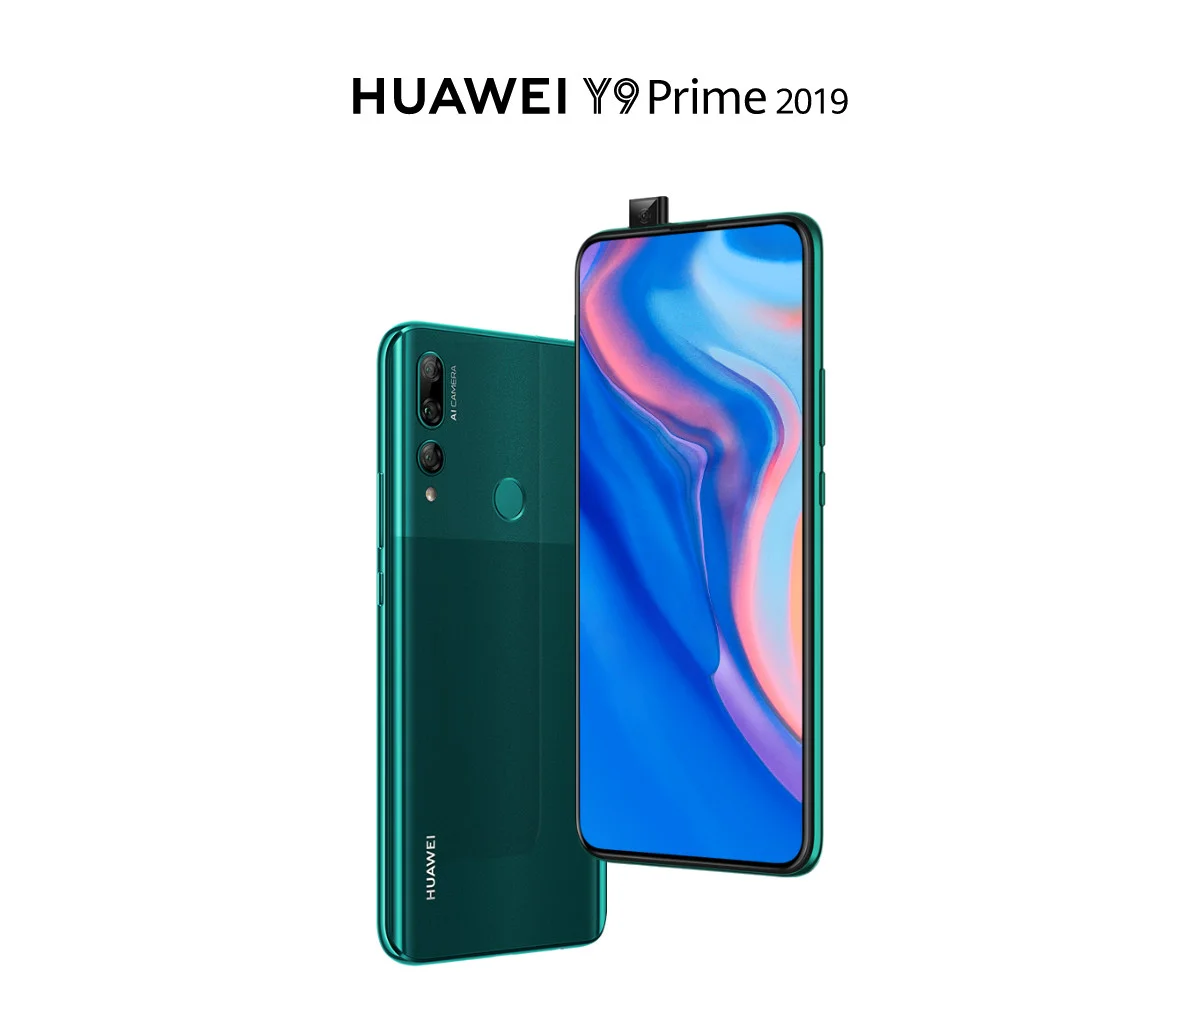 HUAWEI Y9 Prime 2019